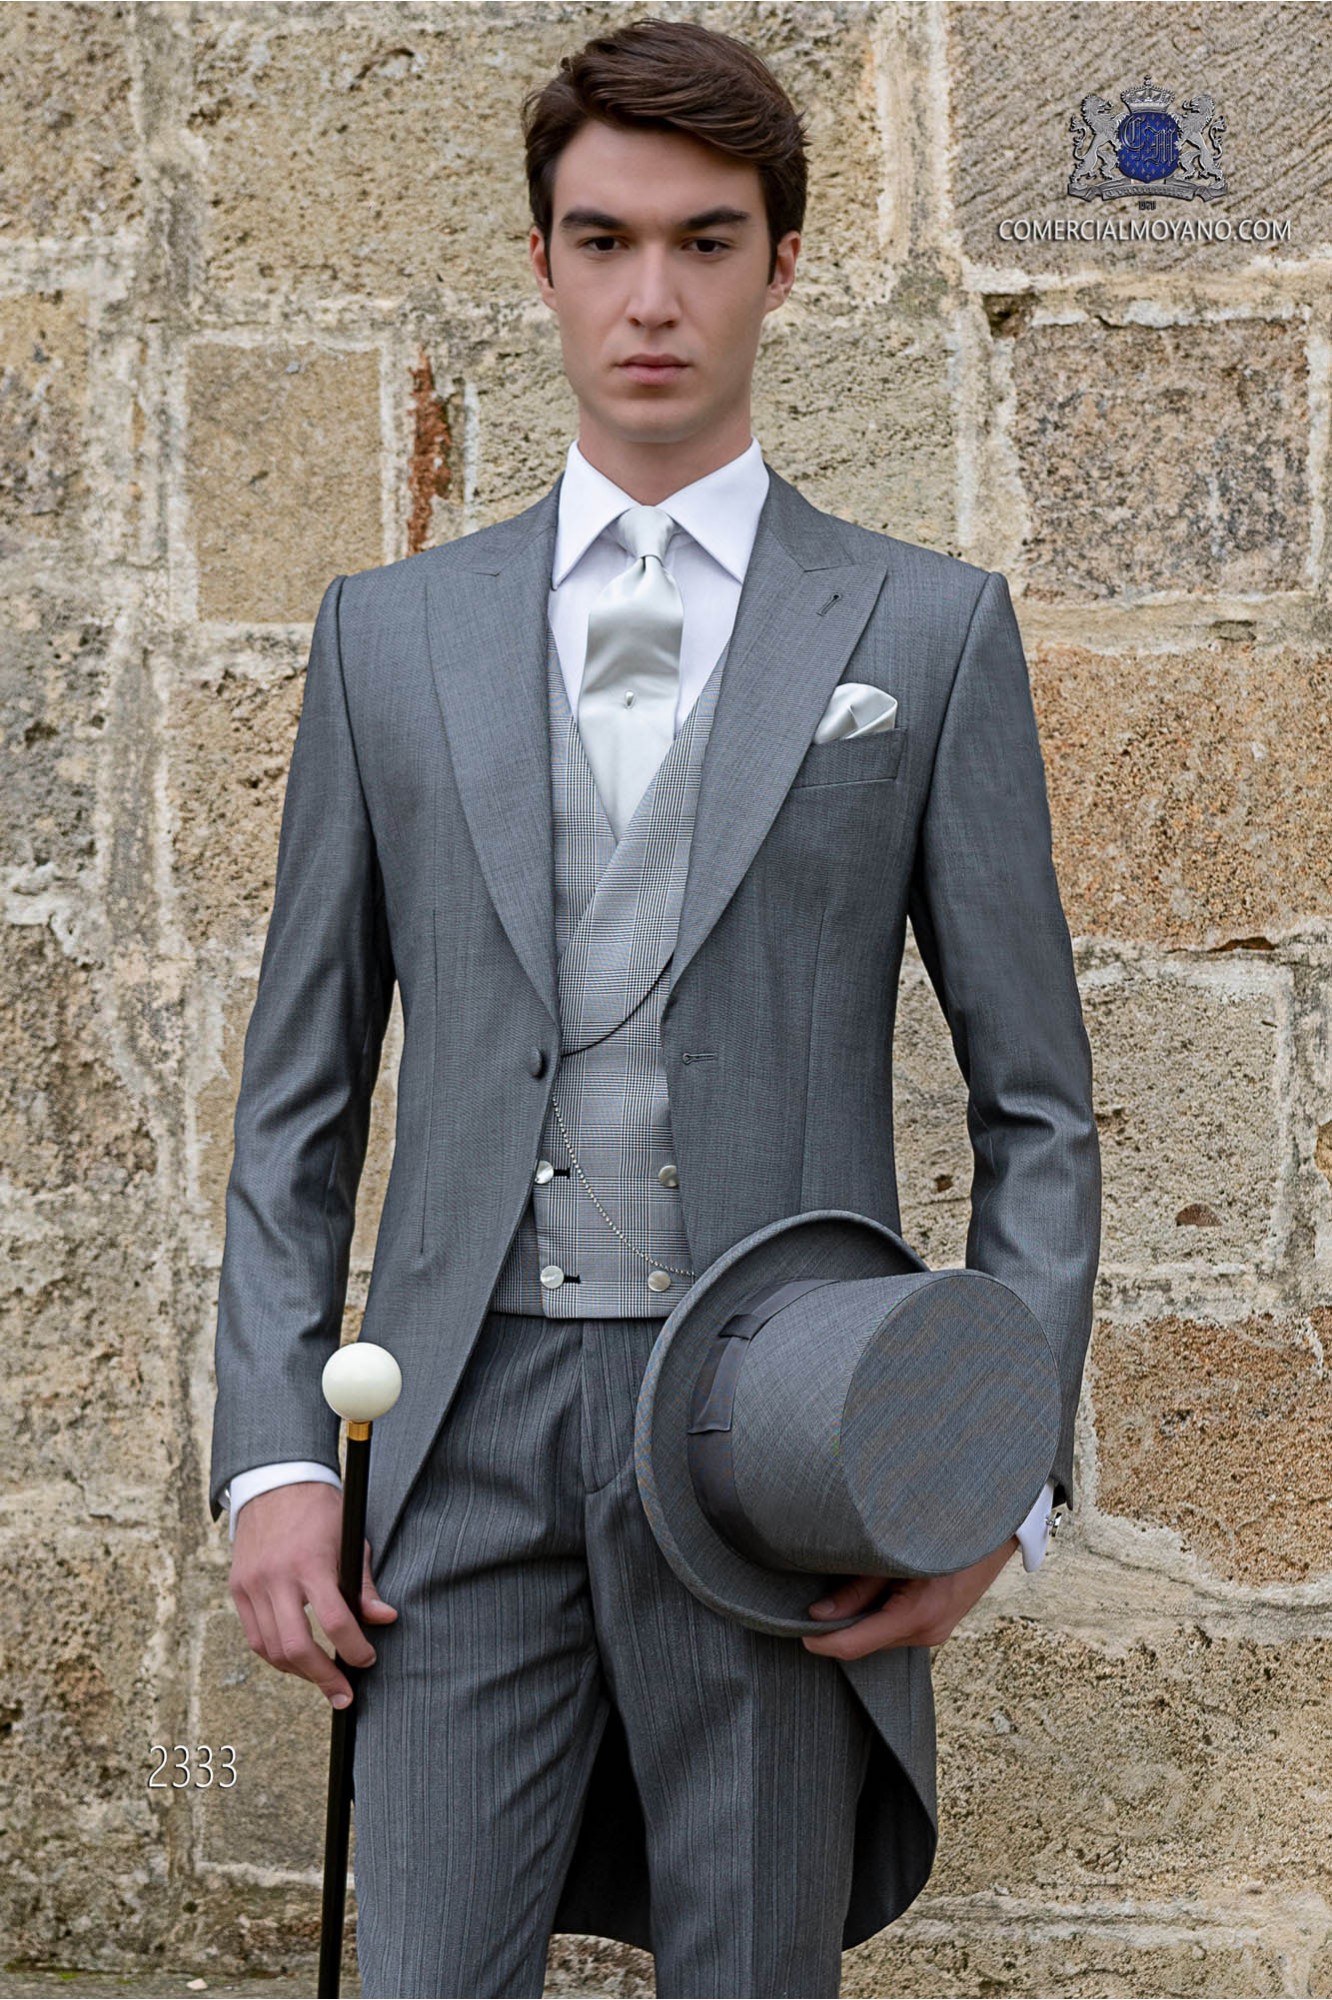 Chaqué de novio gris claro tejido mixto lana con pantalón raya diplomática modelo: 2333 Mario Moyano colección Gentleman